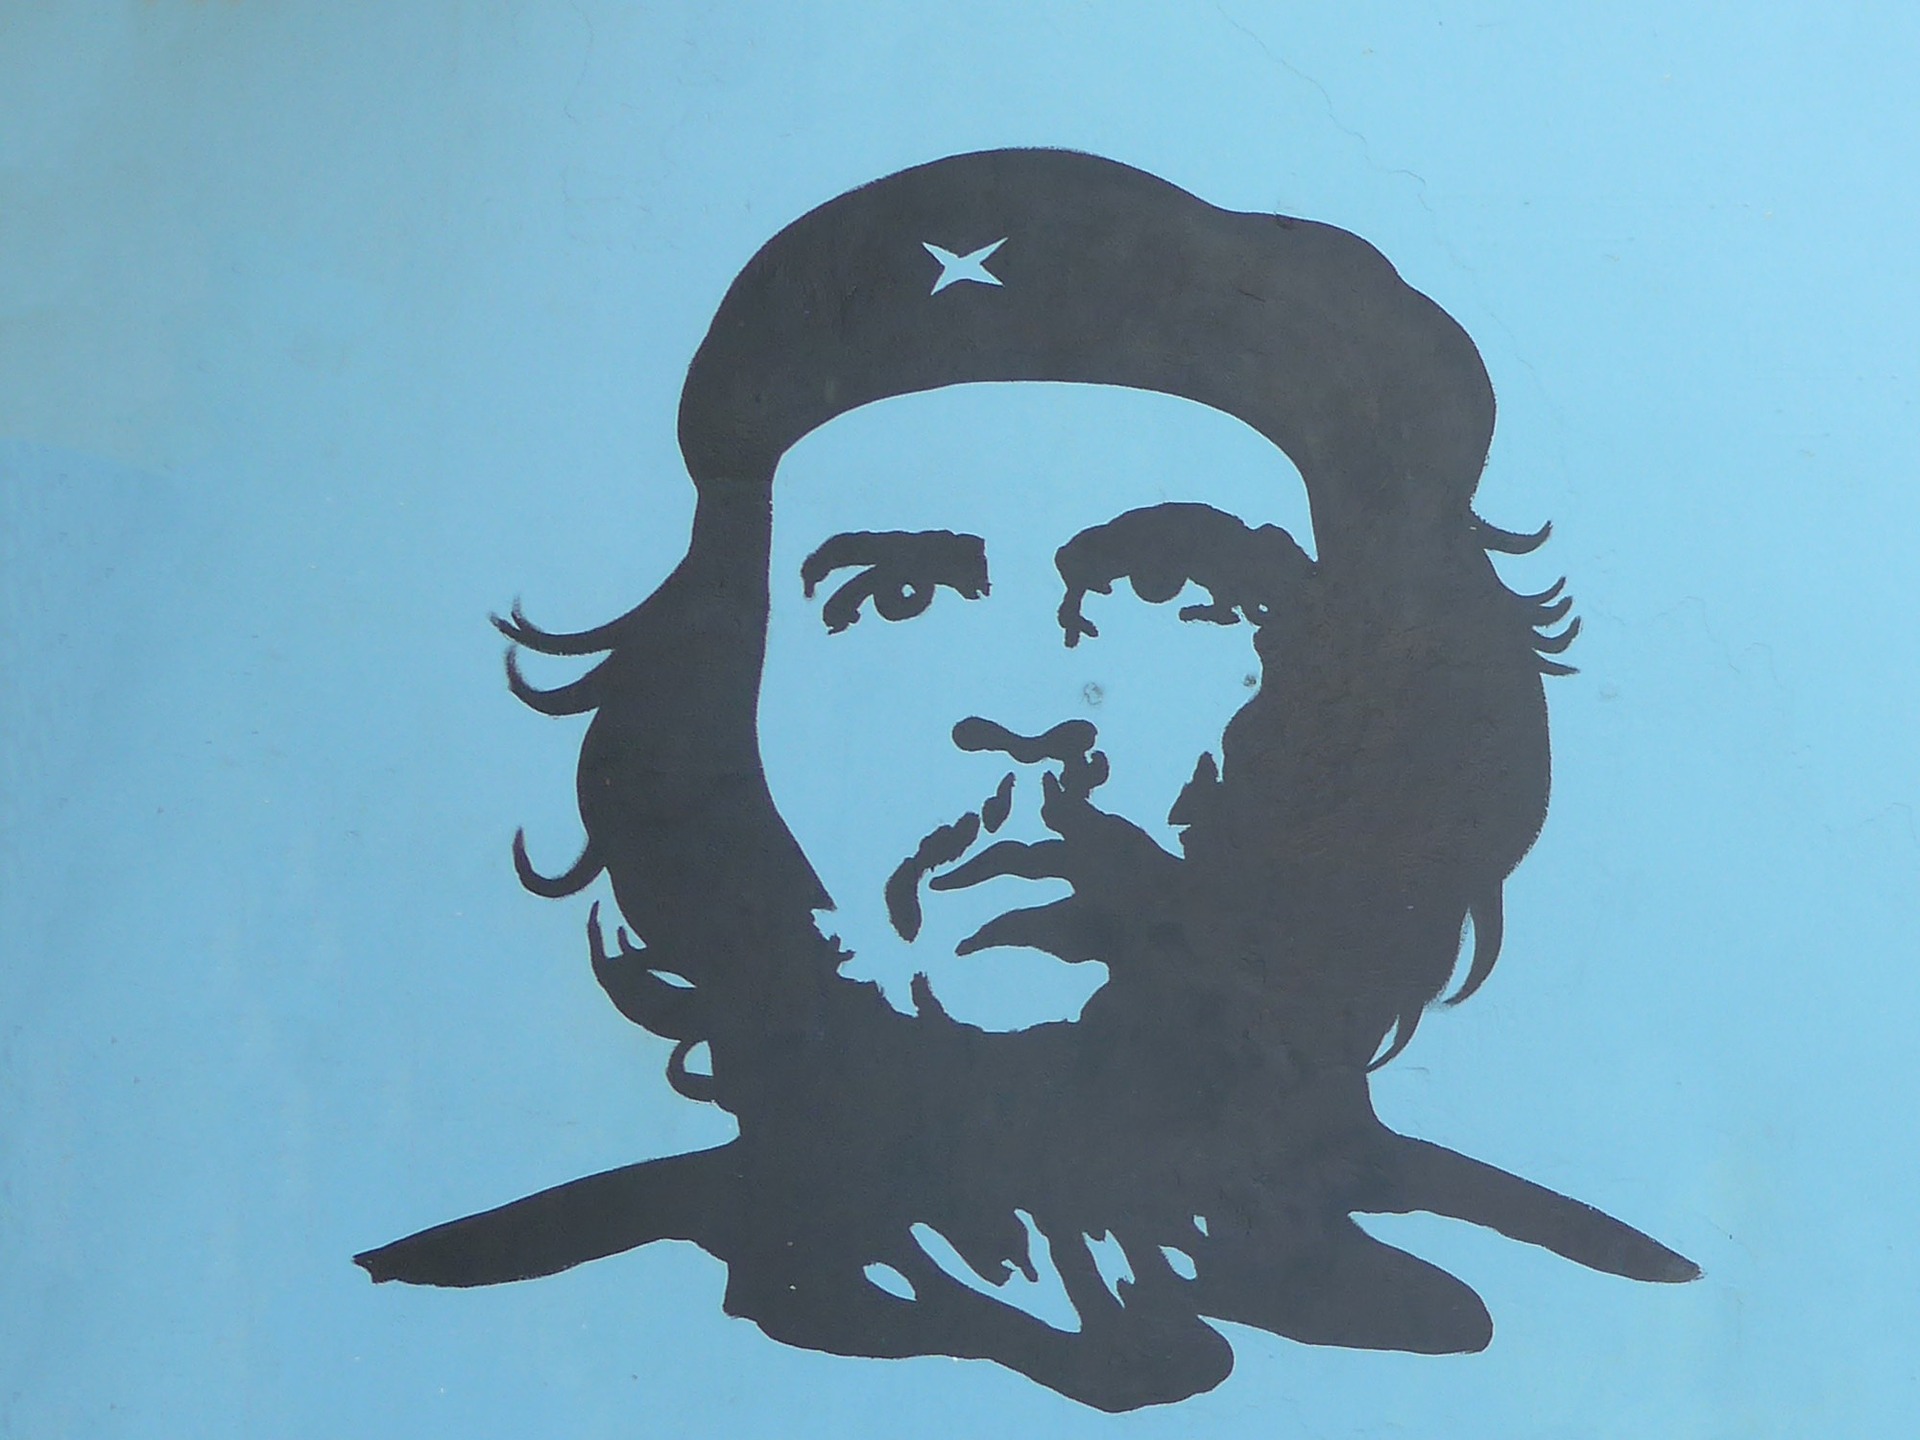 Graffiti-Che Guevara-Cuba